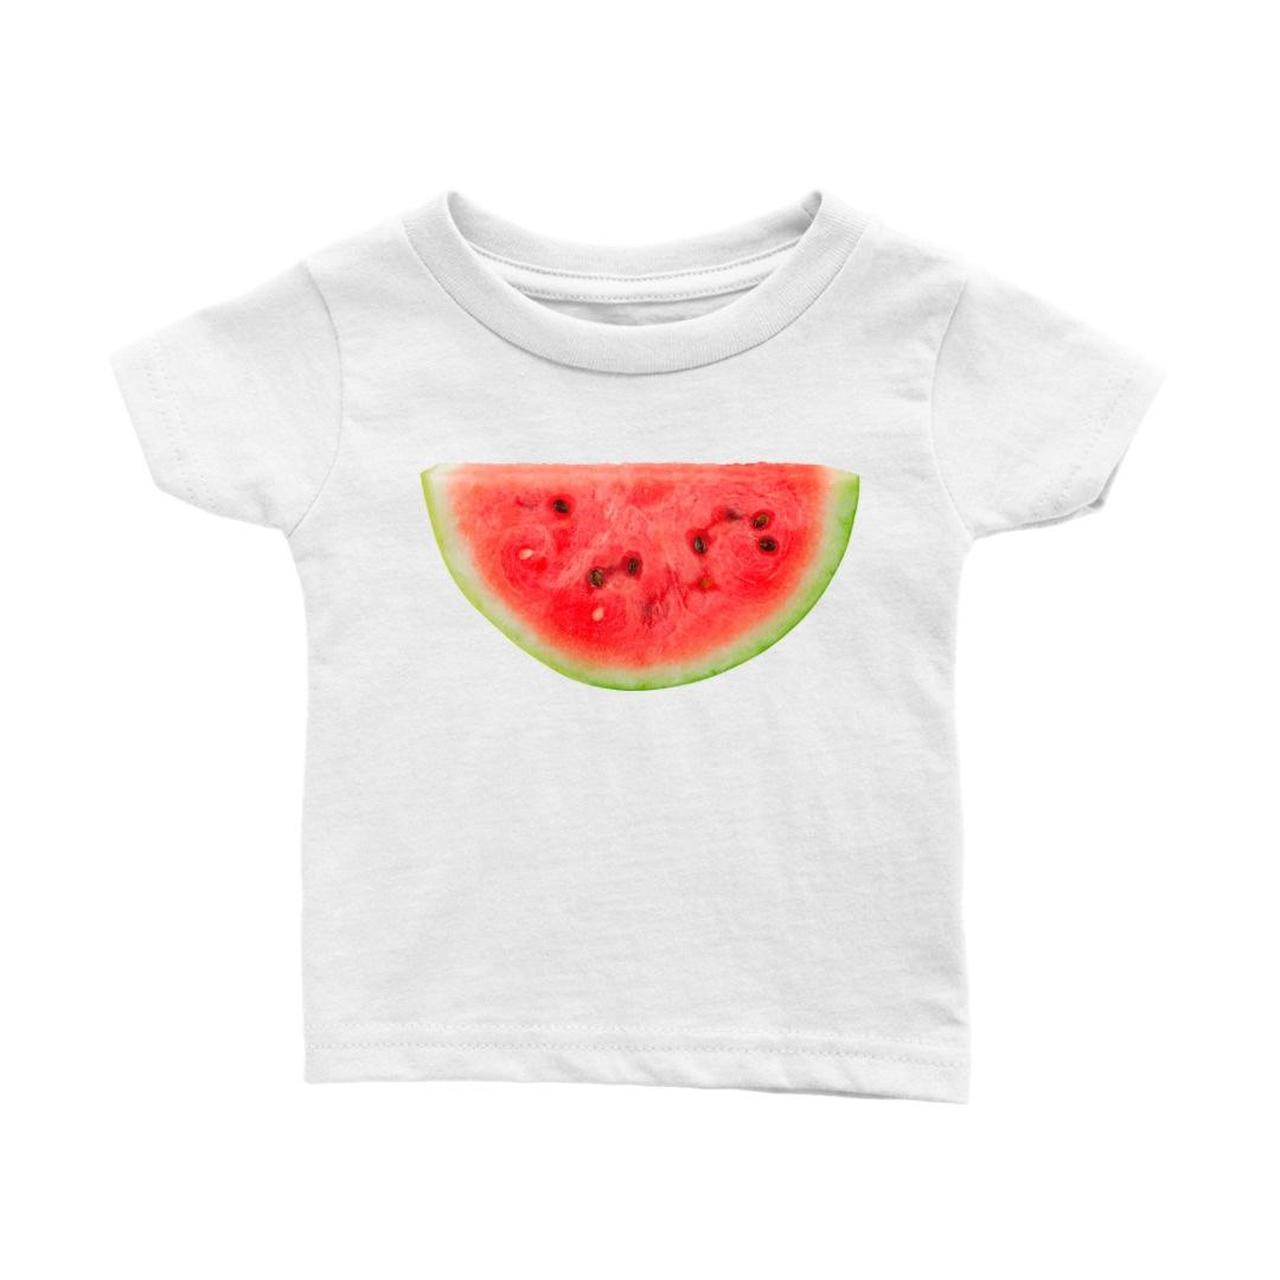 watermelon y2k baby tee ★ swipe for size guide!... - Depop